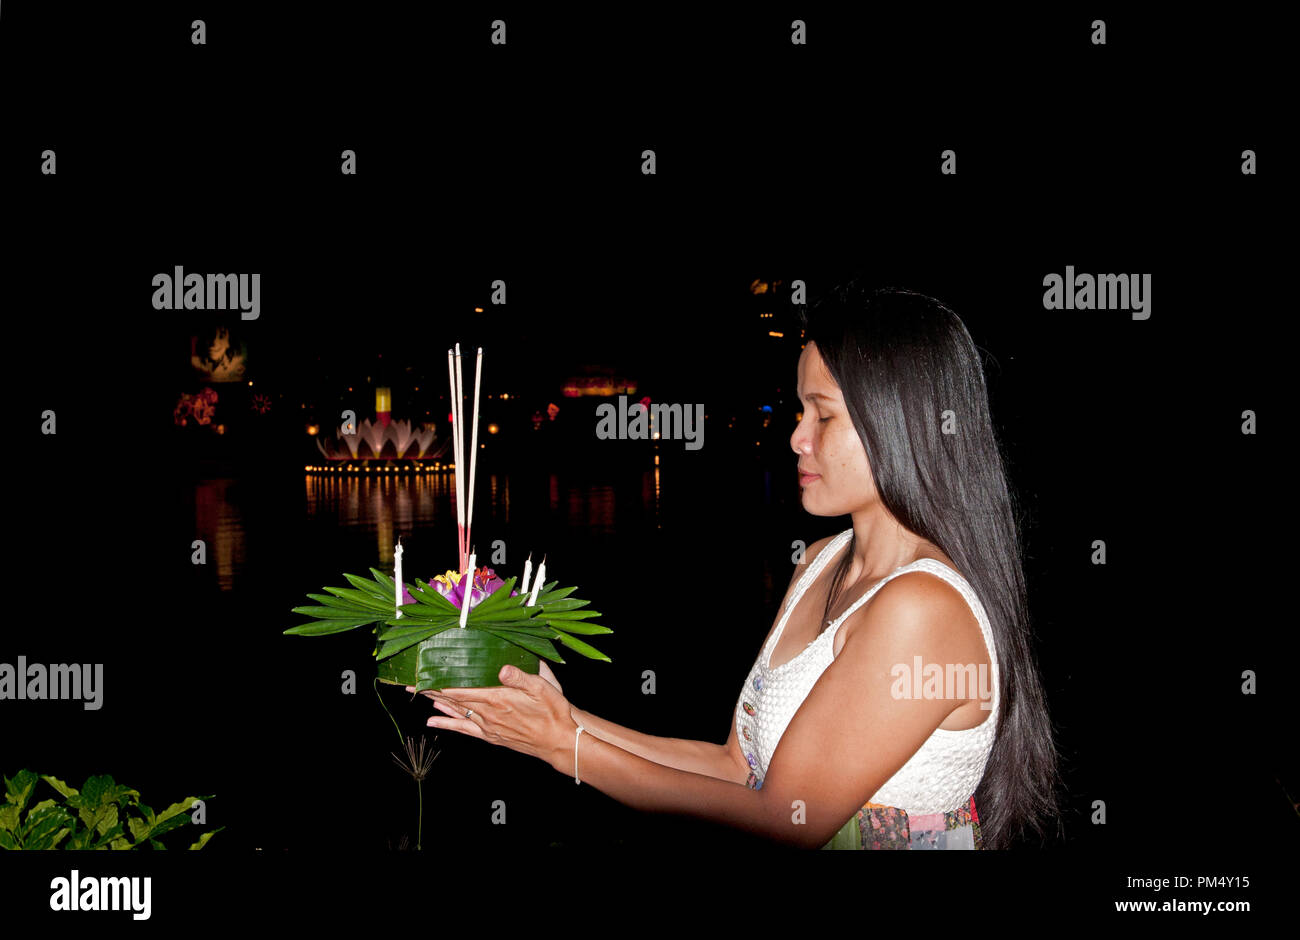 Femme thaïlandaise sur le festival de Loy Krathong - Thaïlande Femme Thaï au Loy Krathong Festival (fête de l'eau) - Thailande Banque D'Images